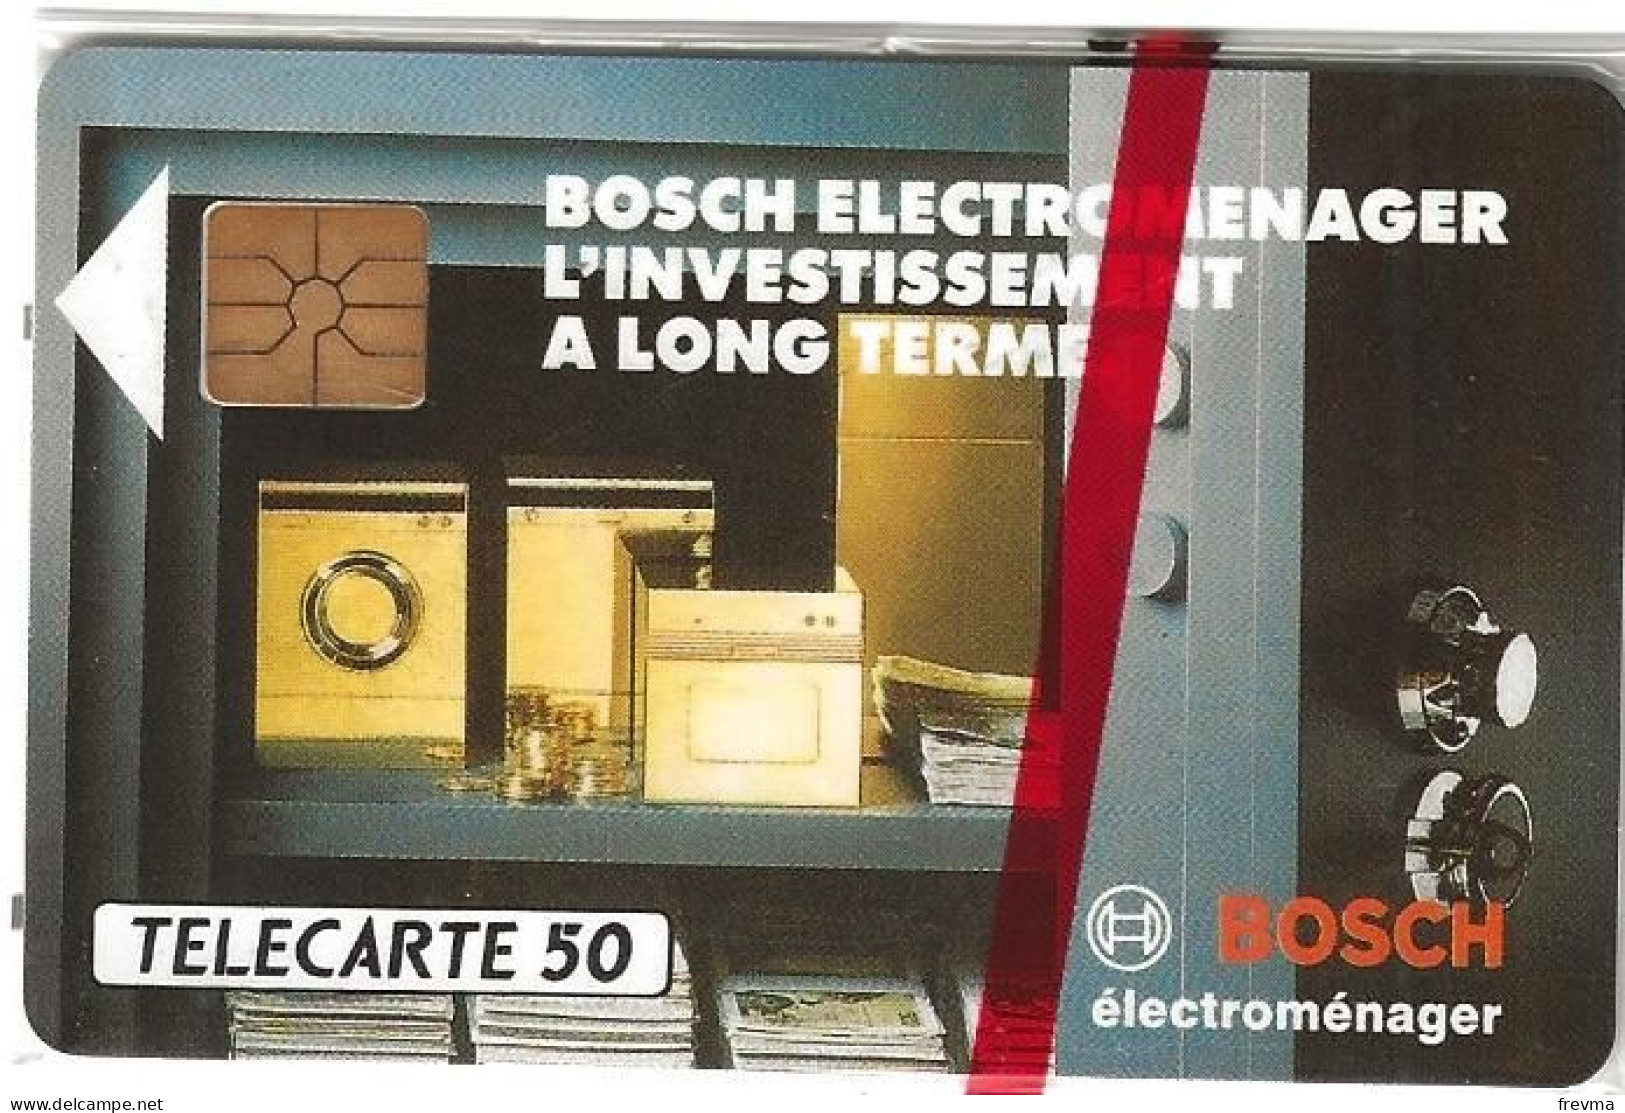 Telecarte E330 Bosch Electromenager 50 Unités NSB GEM - Privadas